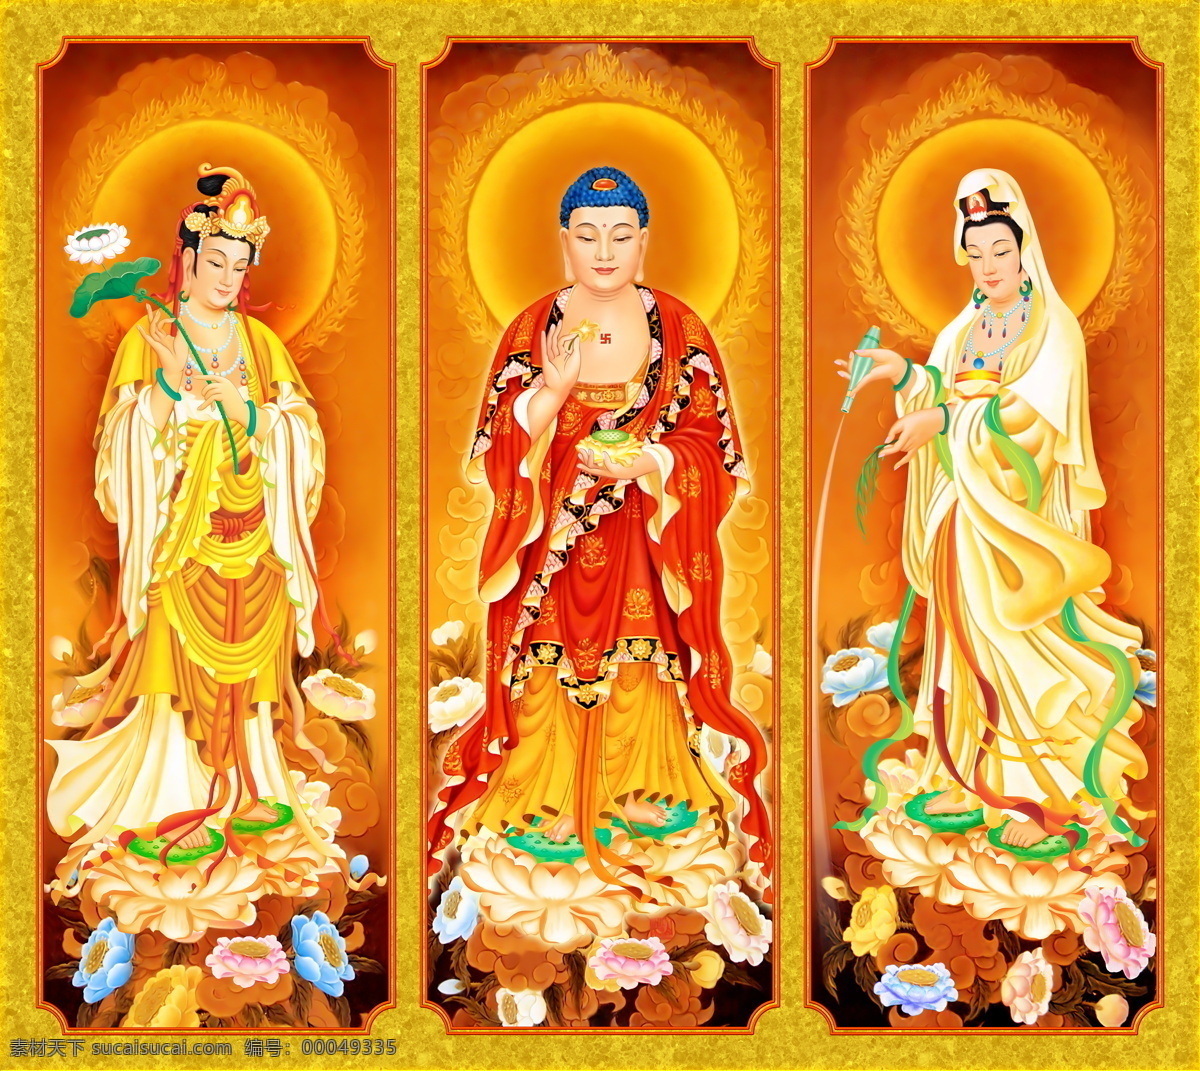 西方三圣 超高清 西方三圣图 佛菩萨圣象 佛教绘画 阿弥陀佛 观世音菩萨 大势至菩萨 文化艺术 宗教信仰